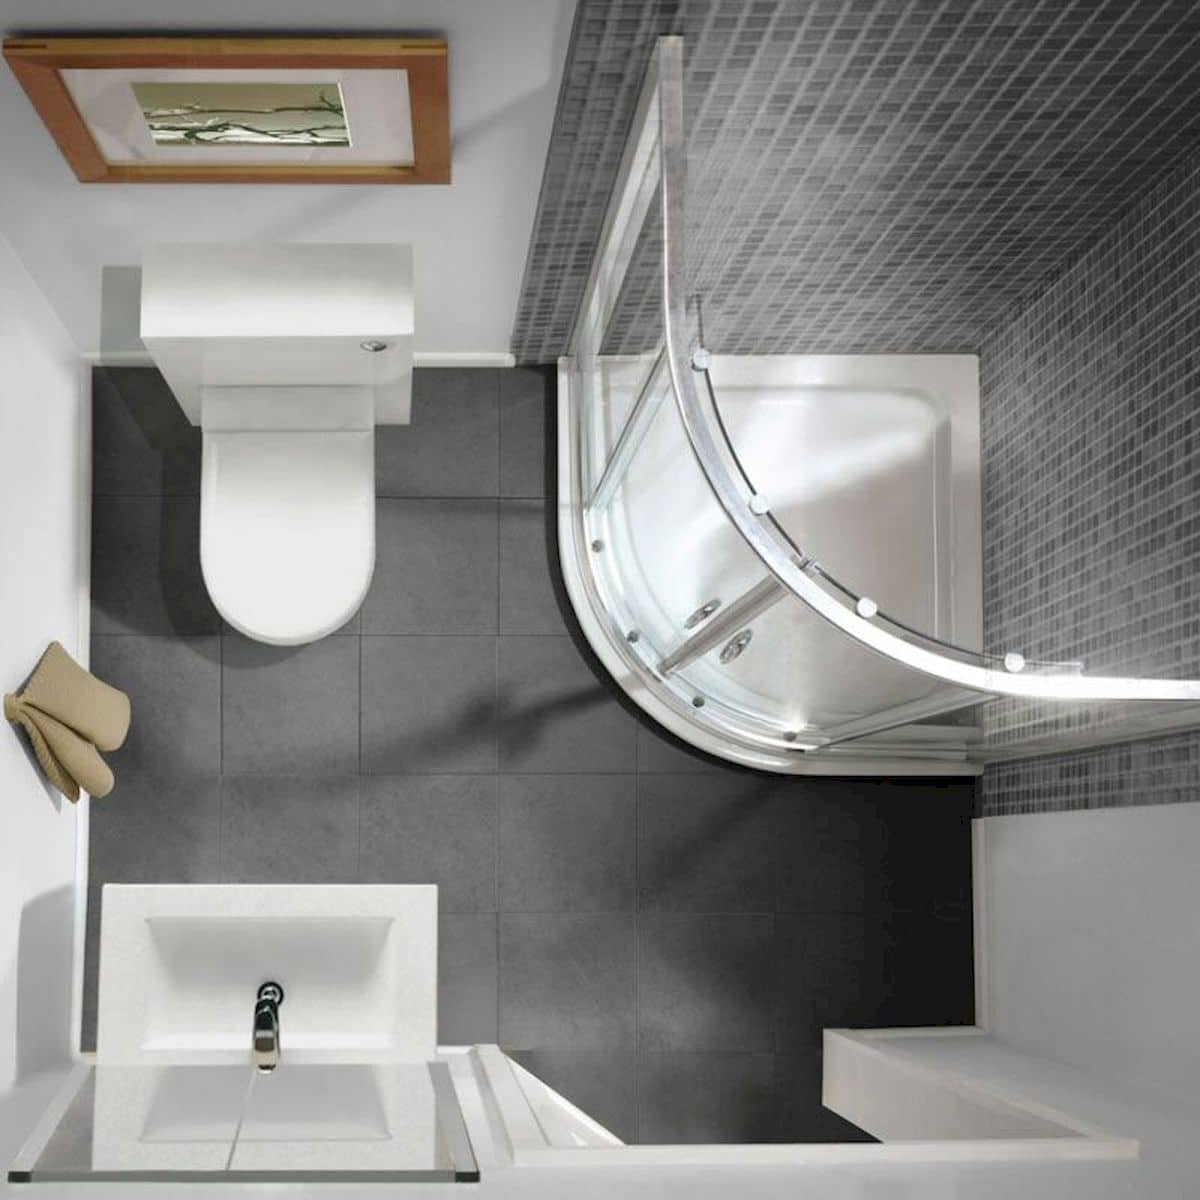 Thiết kế phòng tắm cực kì đơn giản, chỉ với đúng 3 món sản phẩm và 2 tông màu đen trắng cơ bản, nhưng cực kì tiện nghi, mà gọn gàng, sạch sẽ.